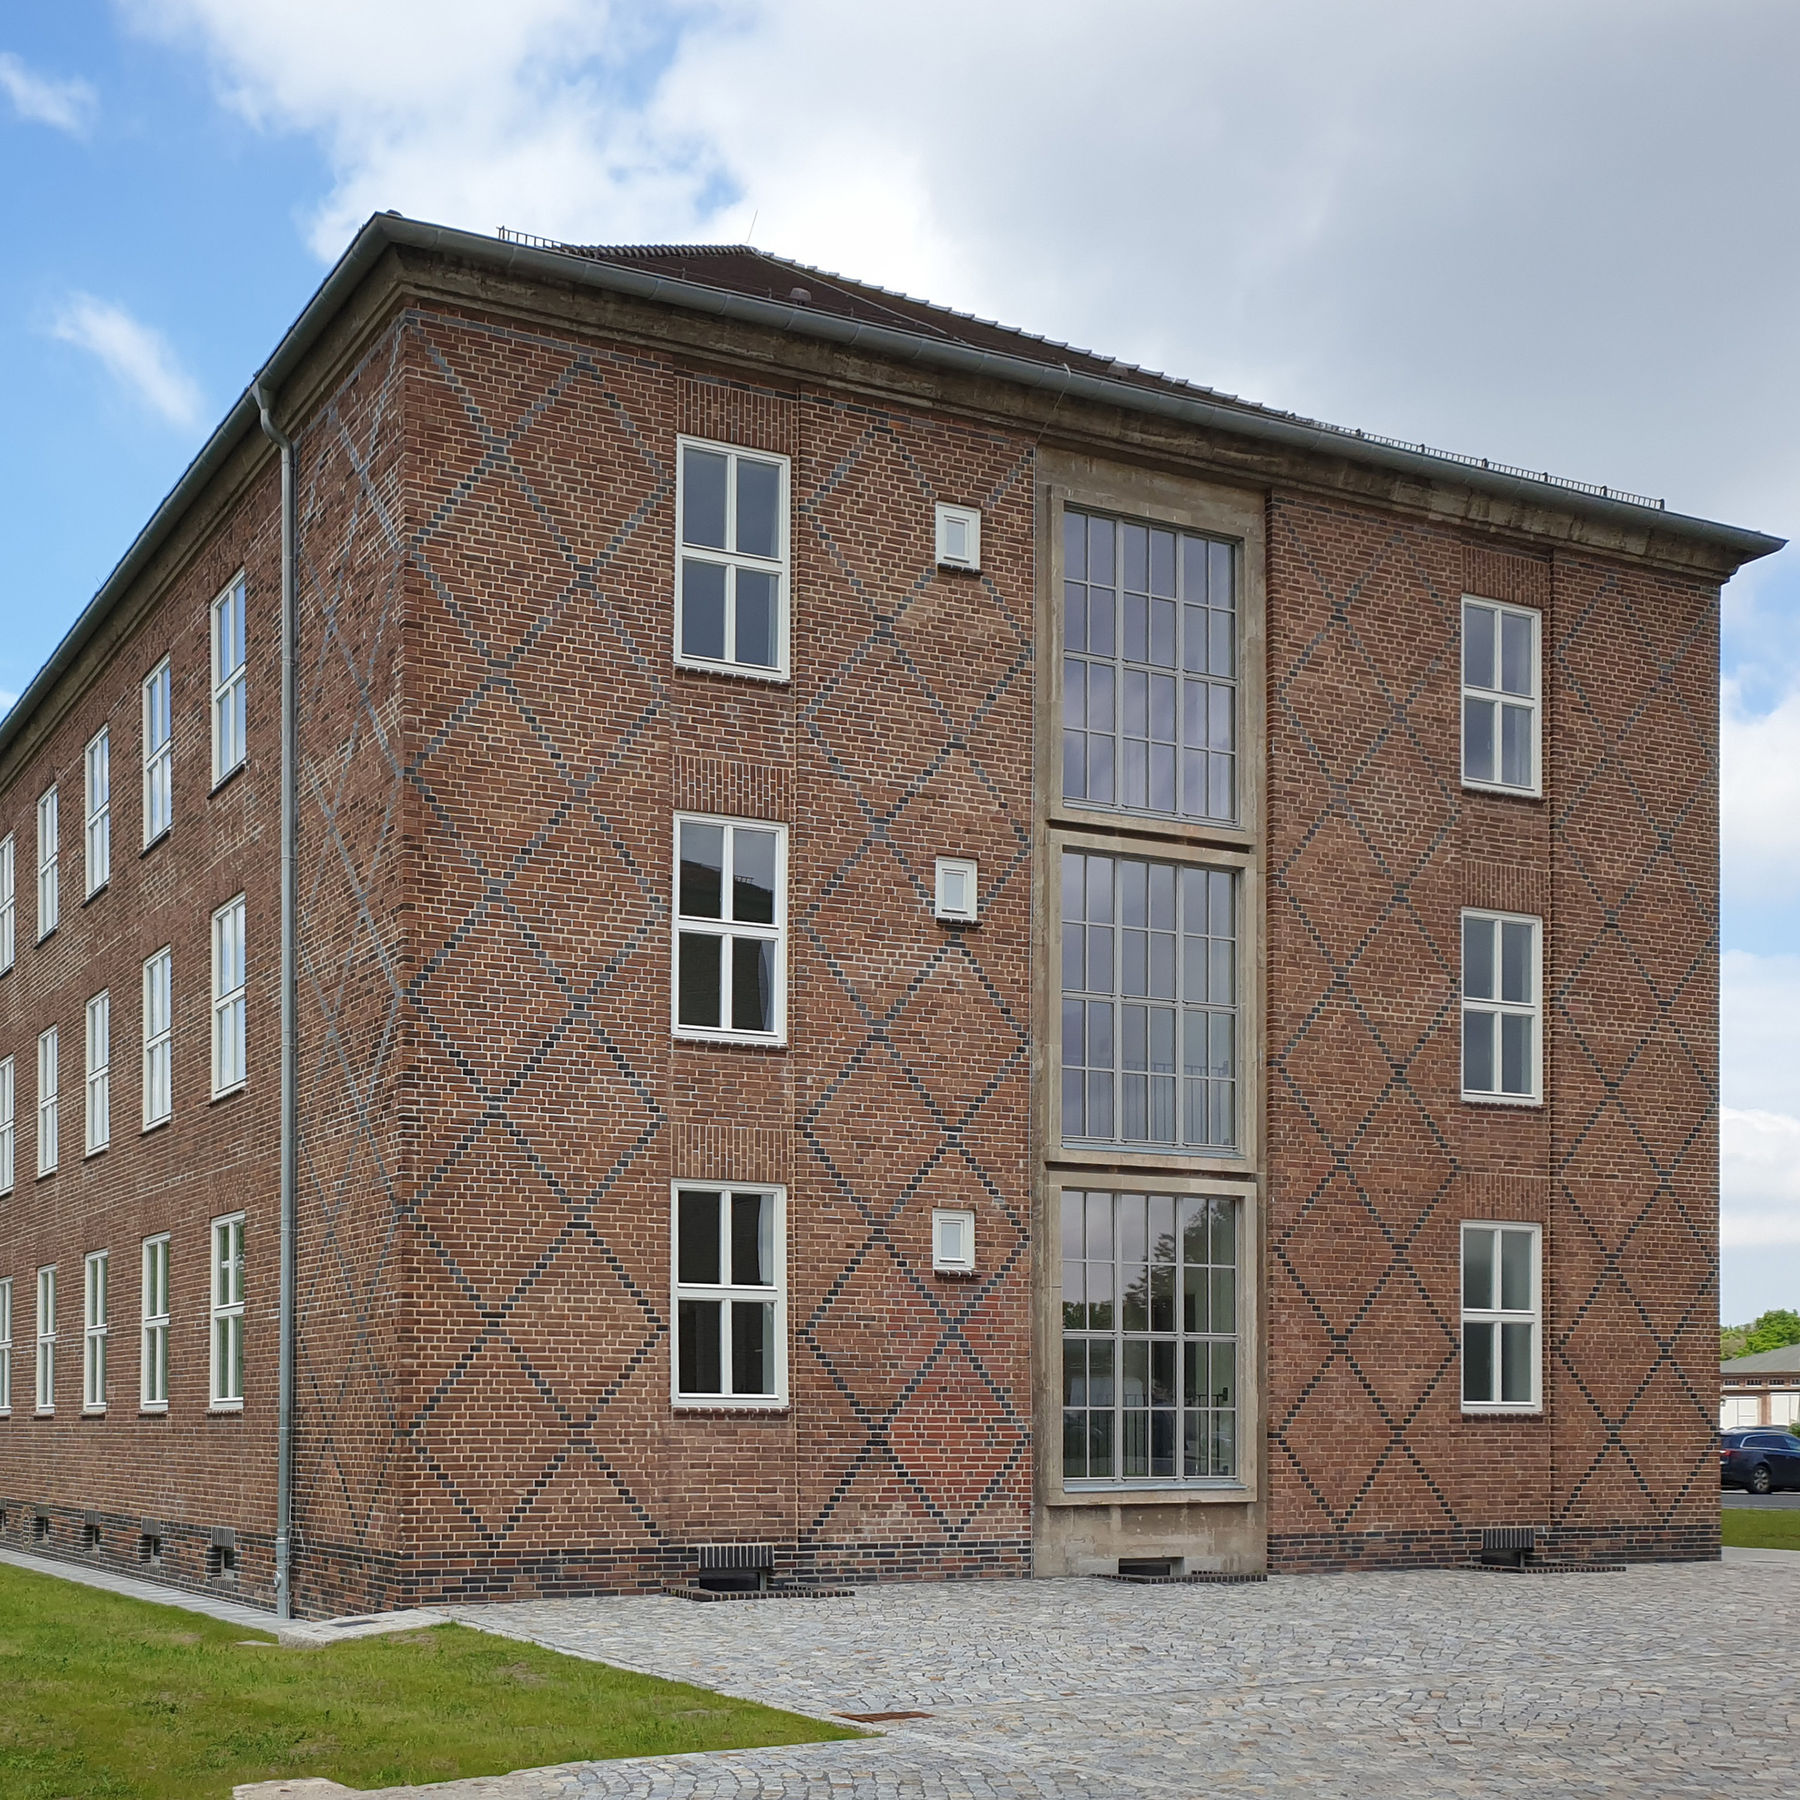 Giebel Gebäude 2 - Als sparsamer Fassadenschmuck wurden an den Gebäudeenden und Giebeln rautenförmige Ornamente aus dunklen Klinkern in die Flächen integriert. © 2021 SBL Neubrandenburg